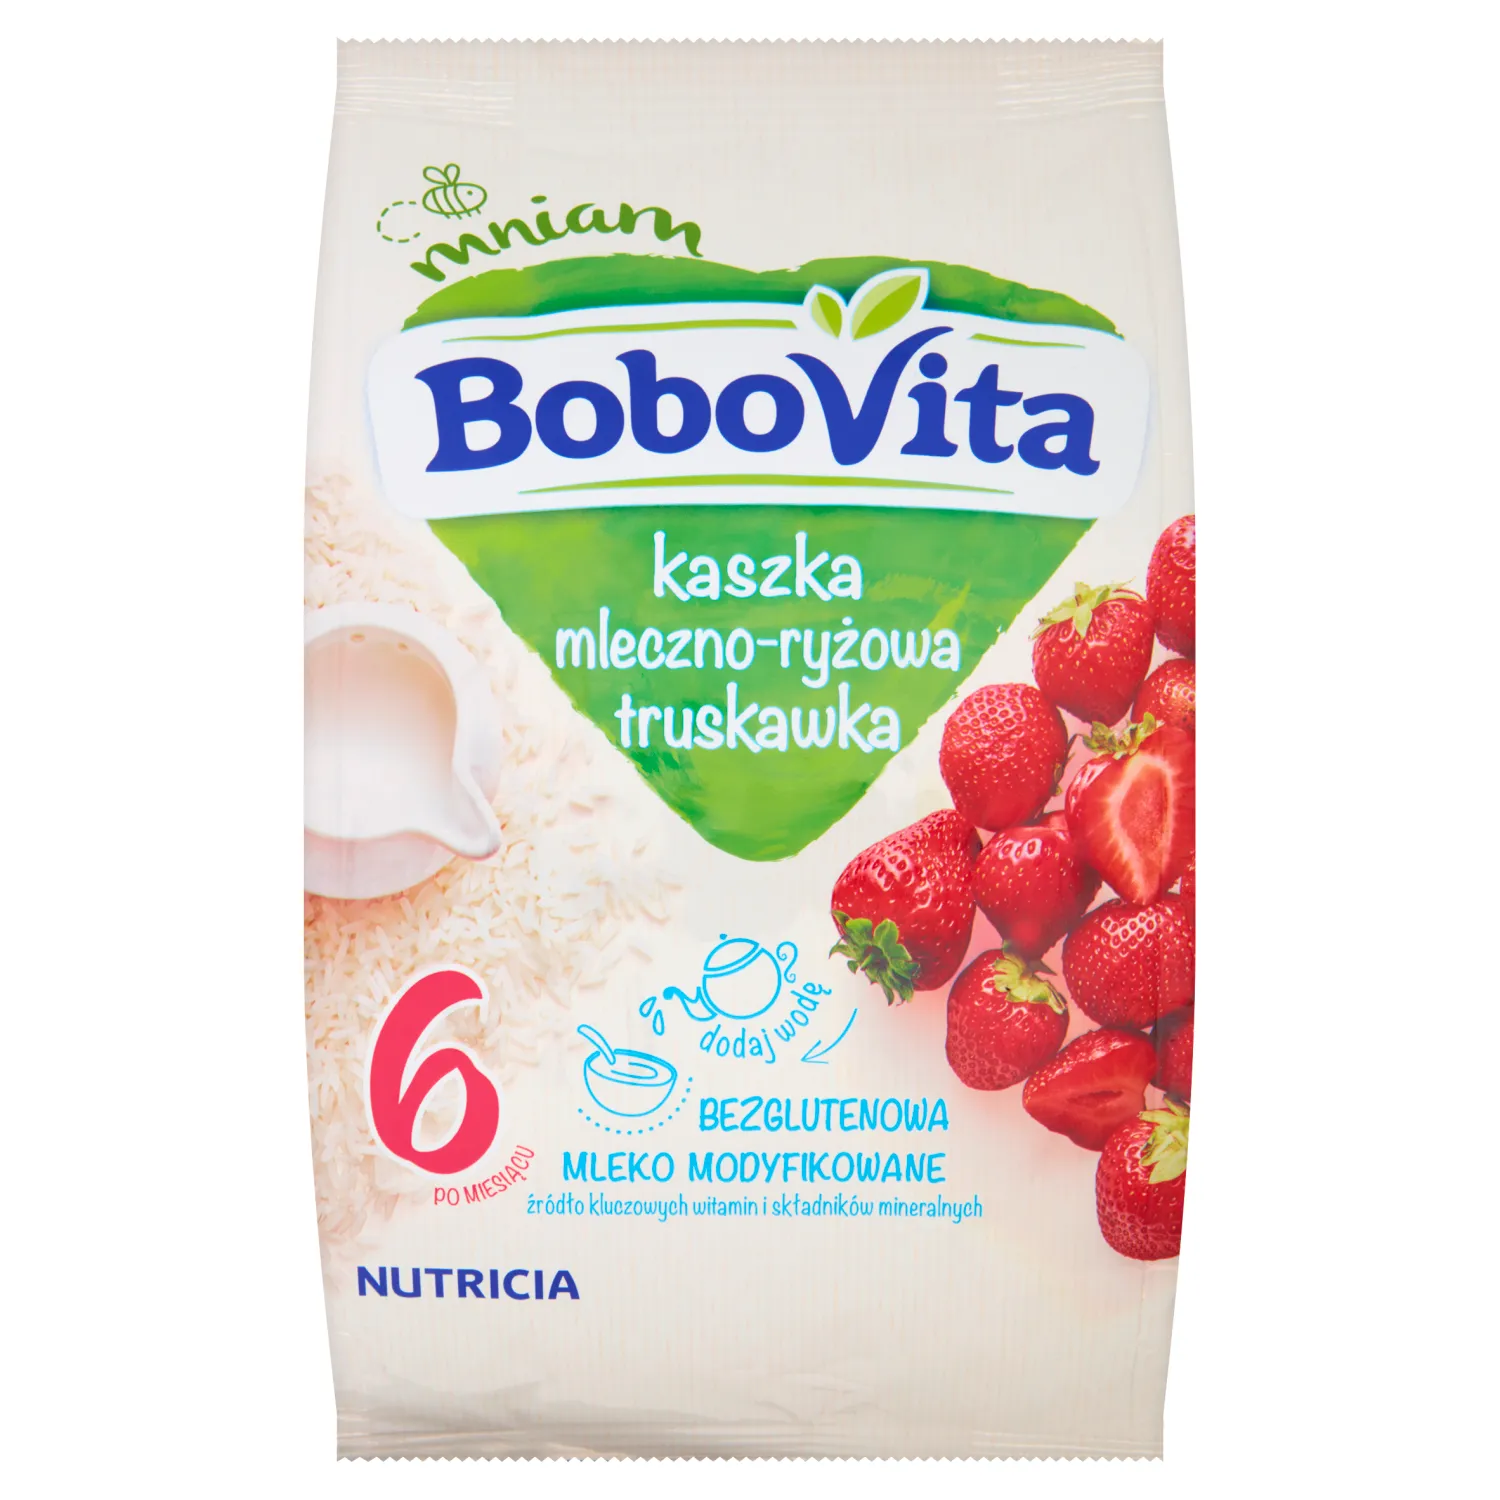 BoboVita, kaszka mleczno-ryżowa truskawka po 6 miesiącu, 230 g